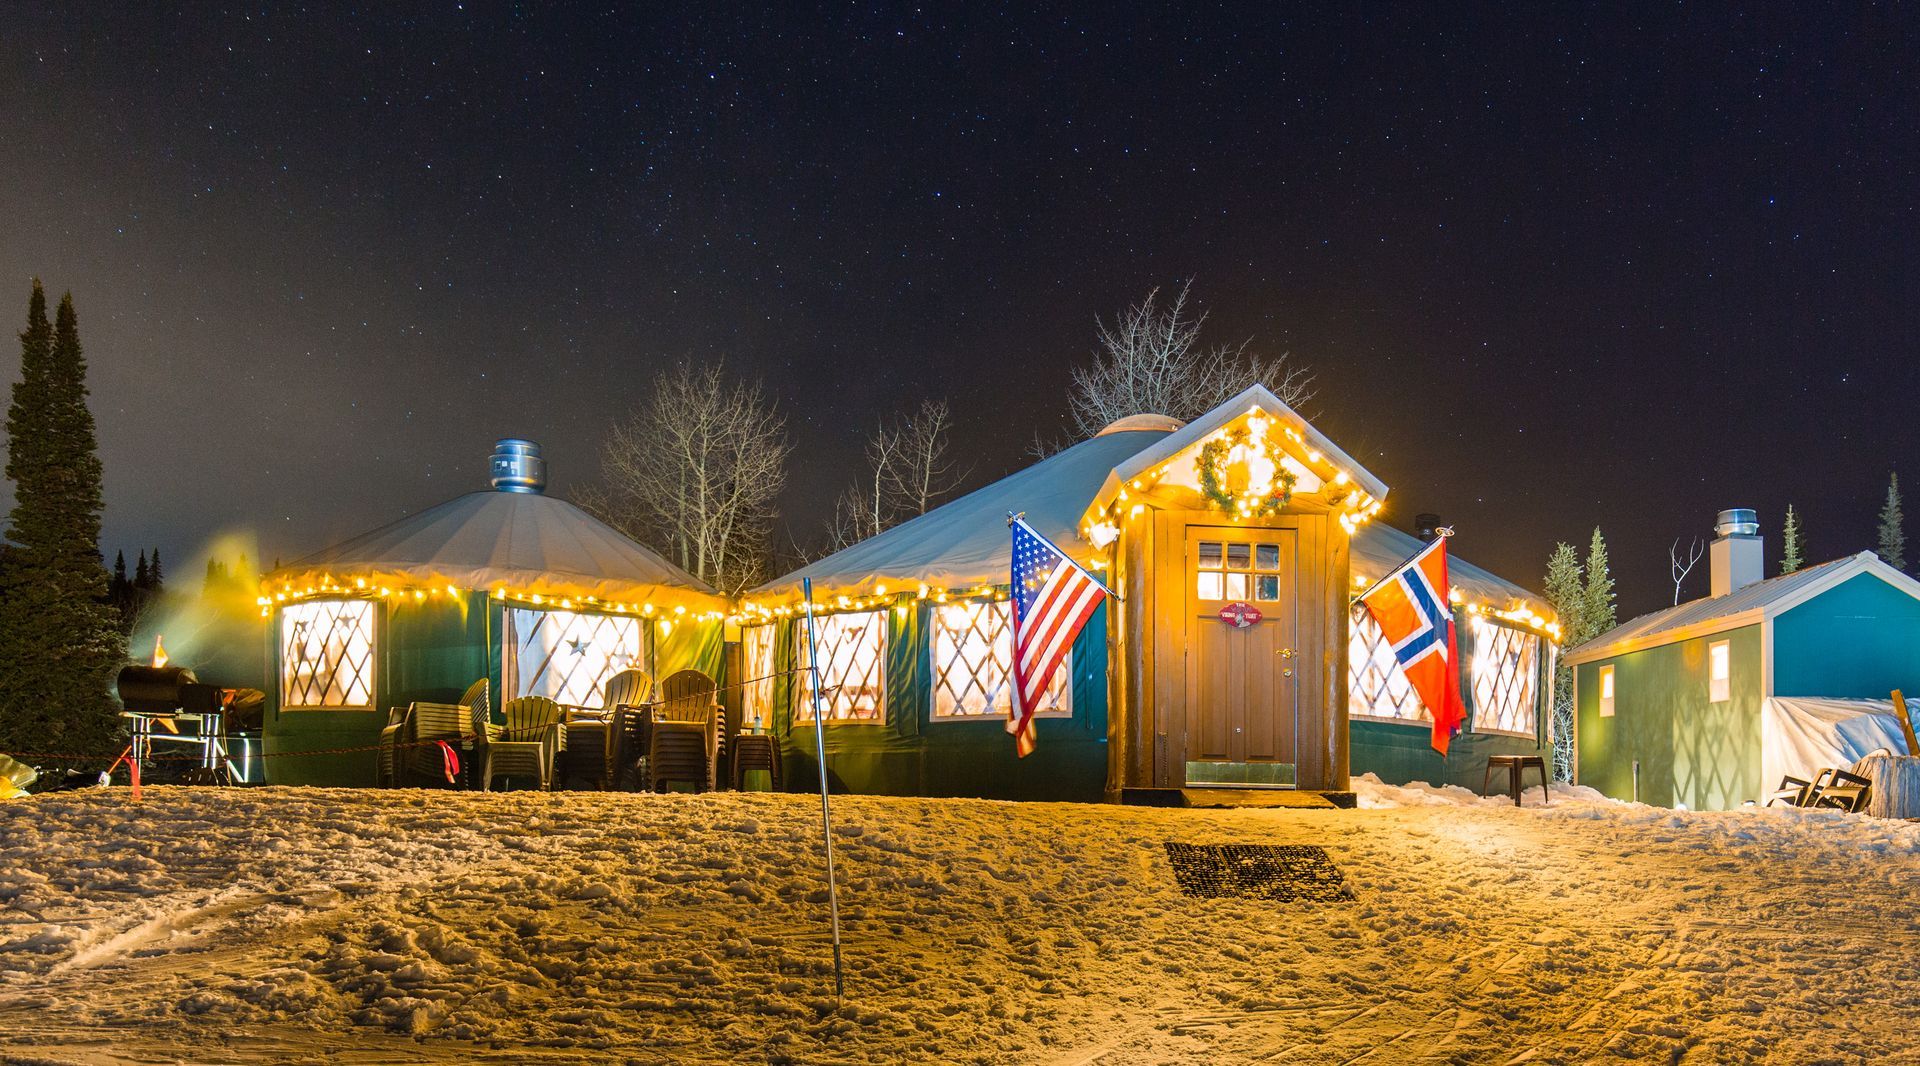 Viking Yurt at night